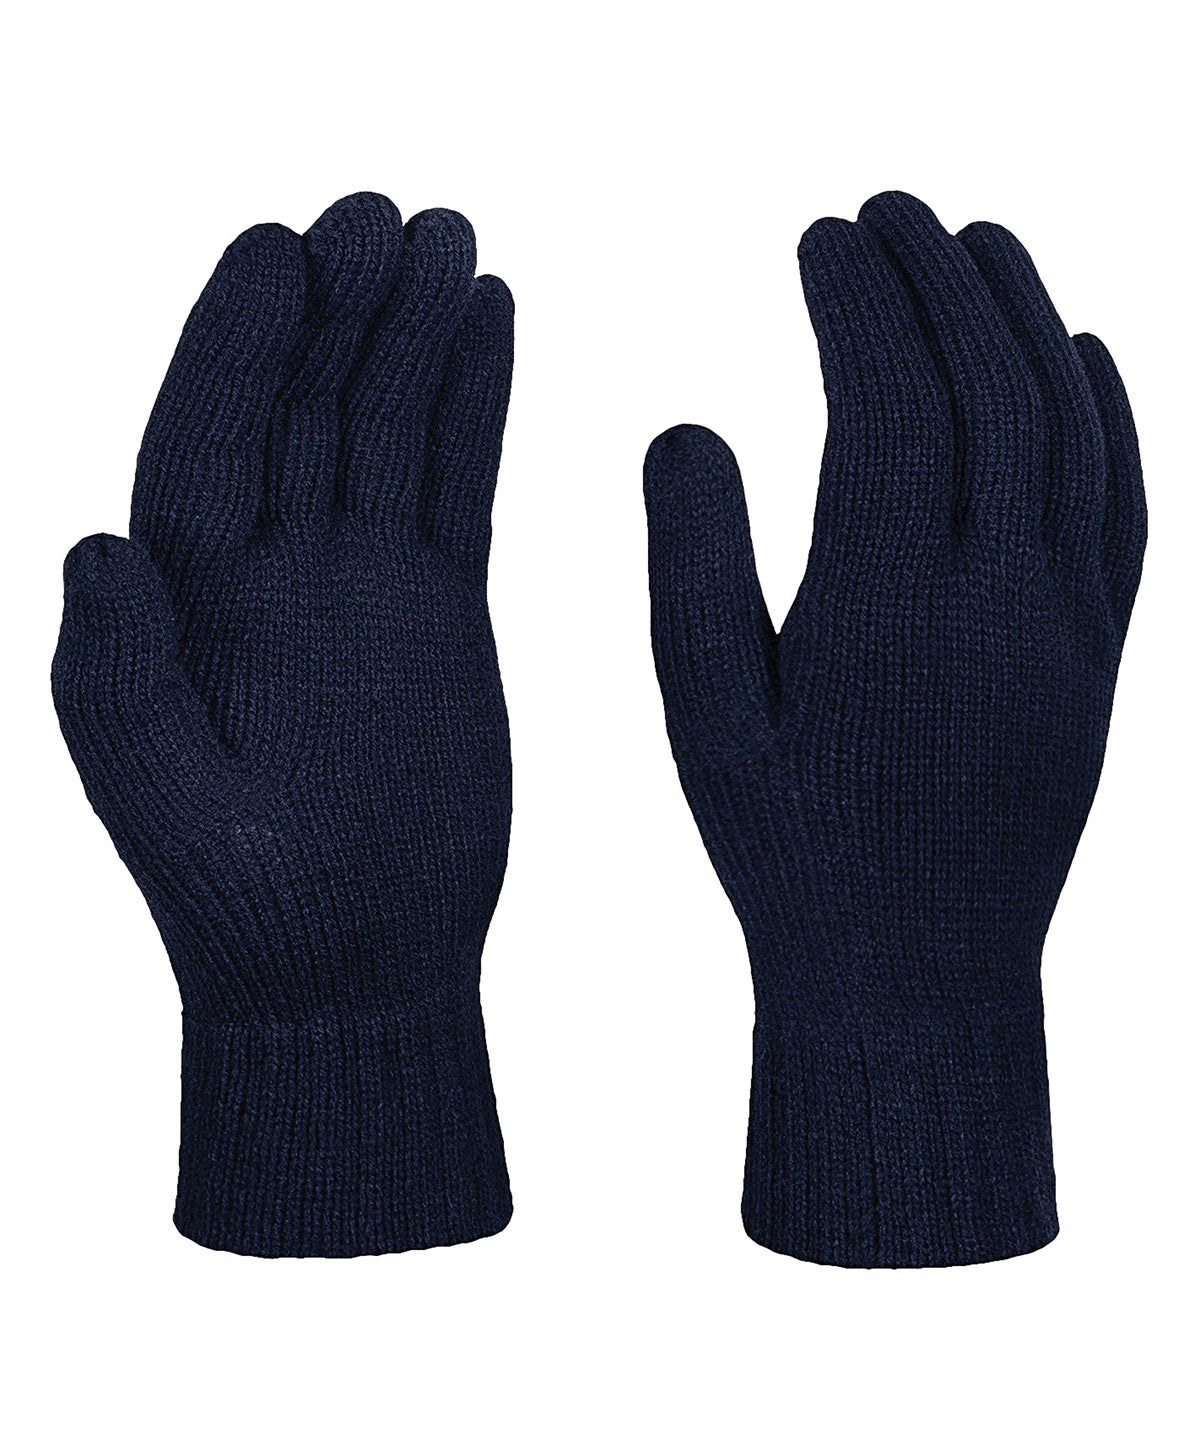 Hanska - Knitted Gloves